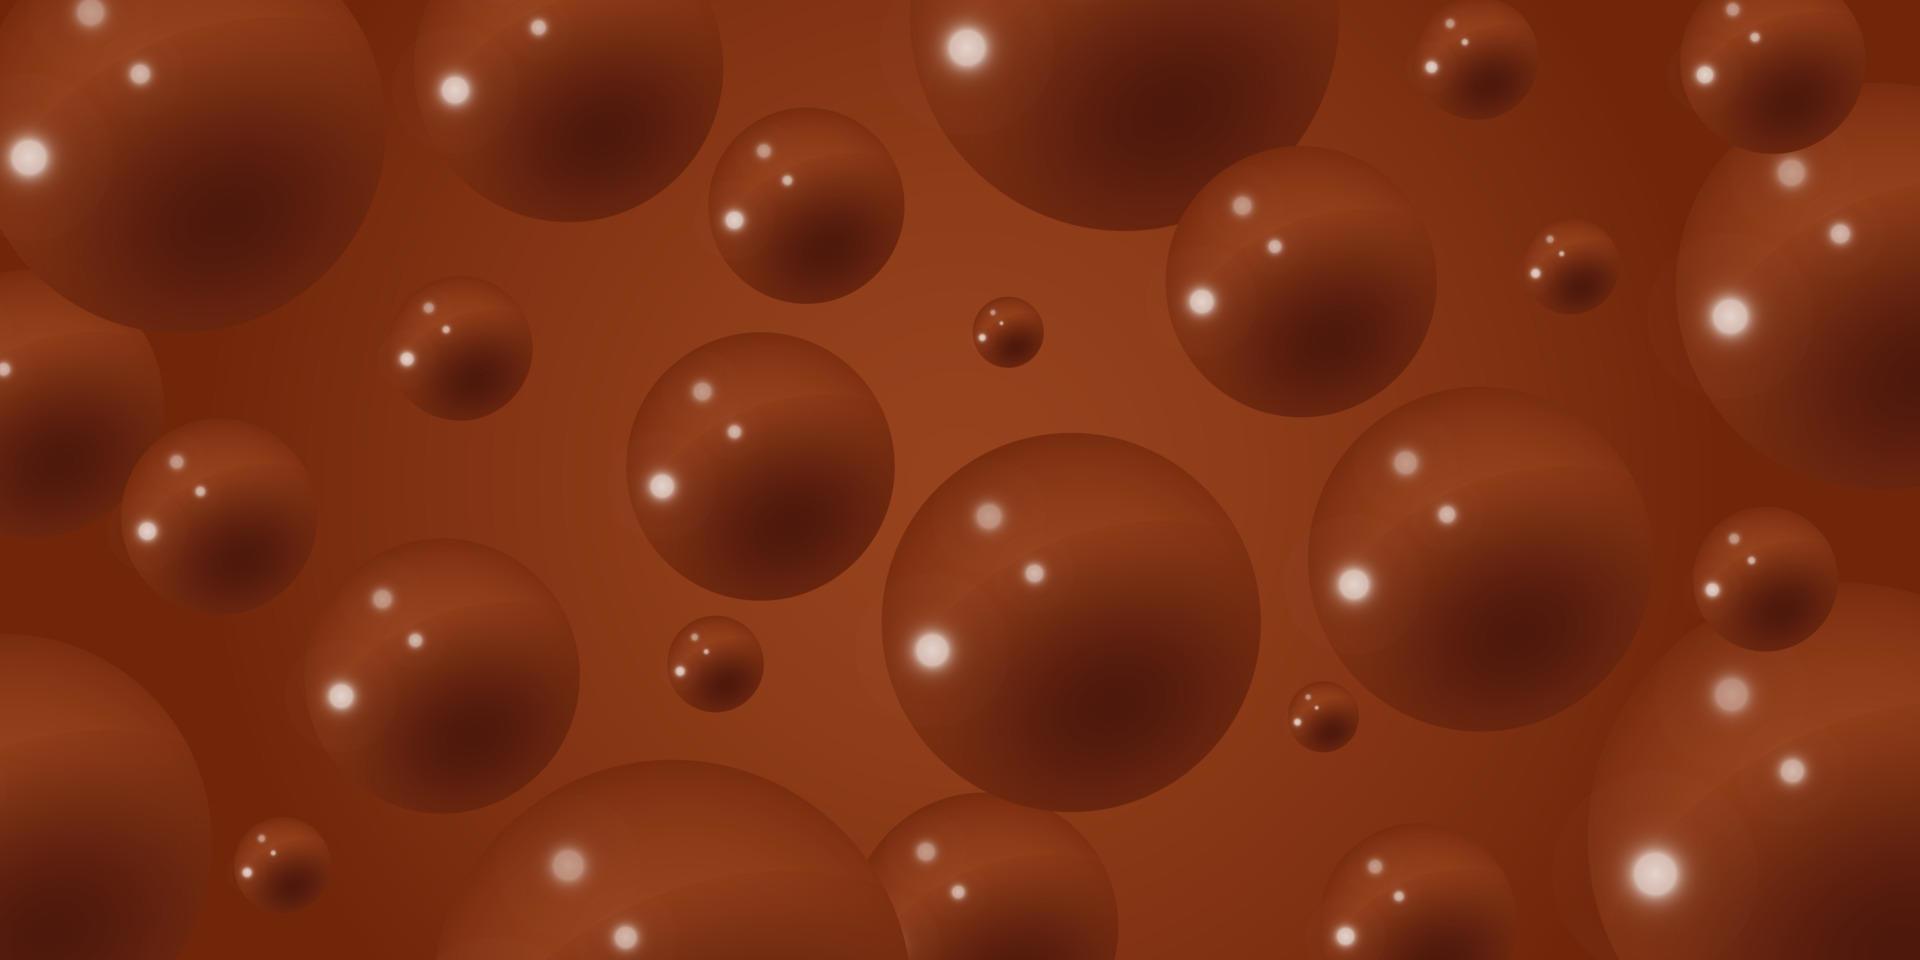 ljuv flytande choklad bakgrund 3d. varm kakao med stänk baner. brun choklad bakgrund med bubblor. vektor illustration.